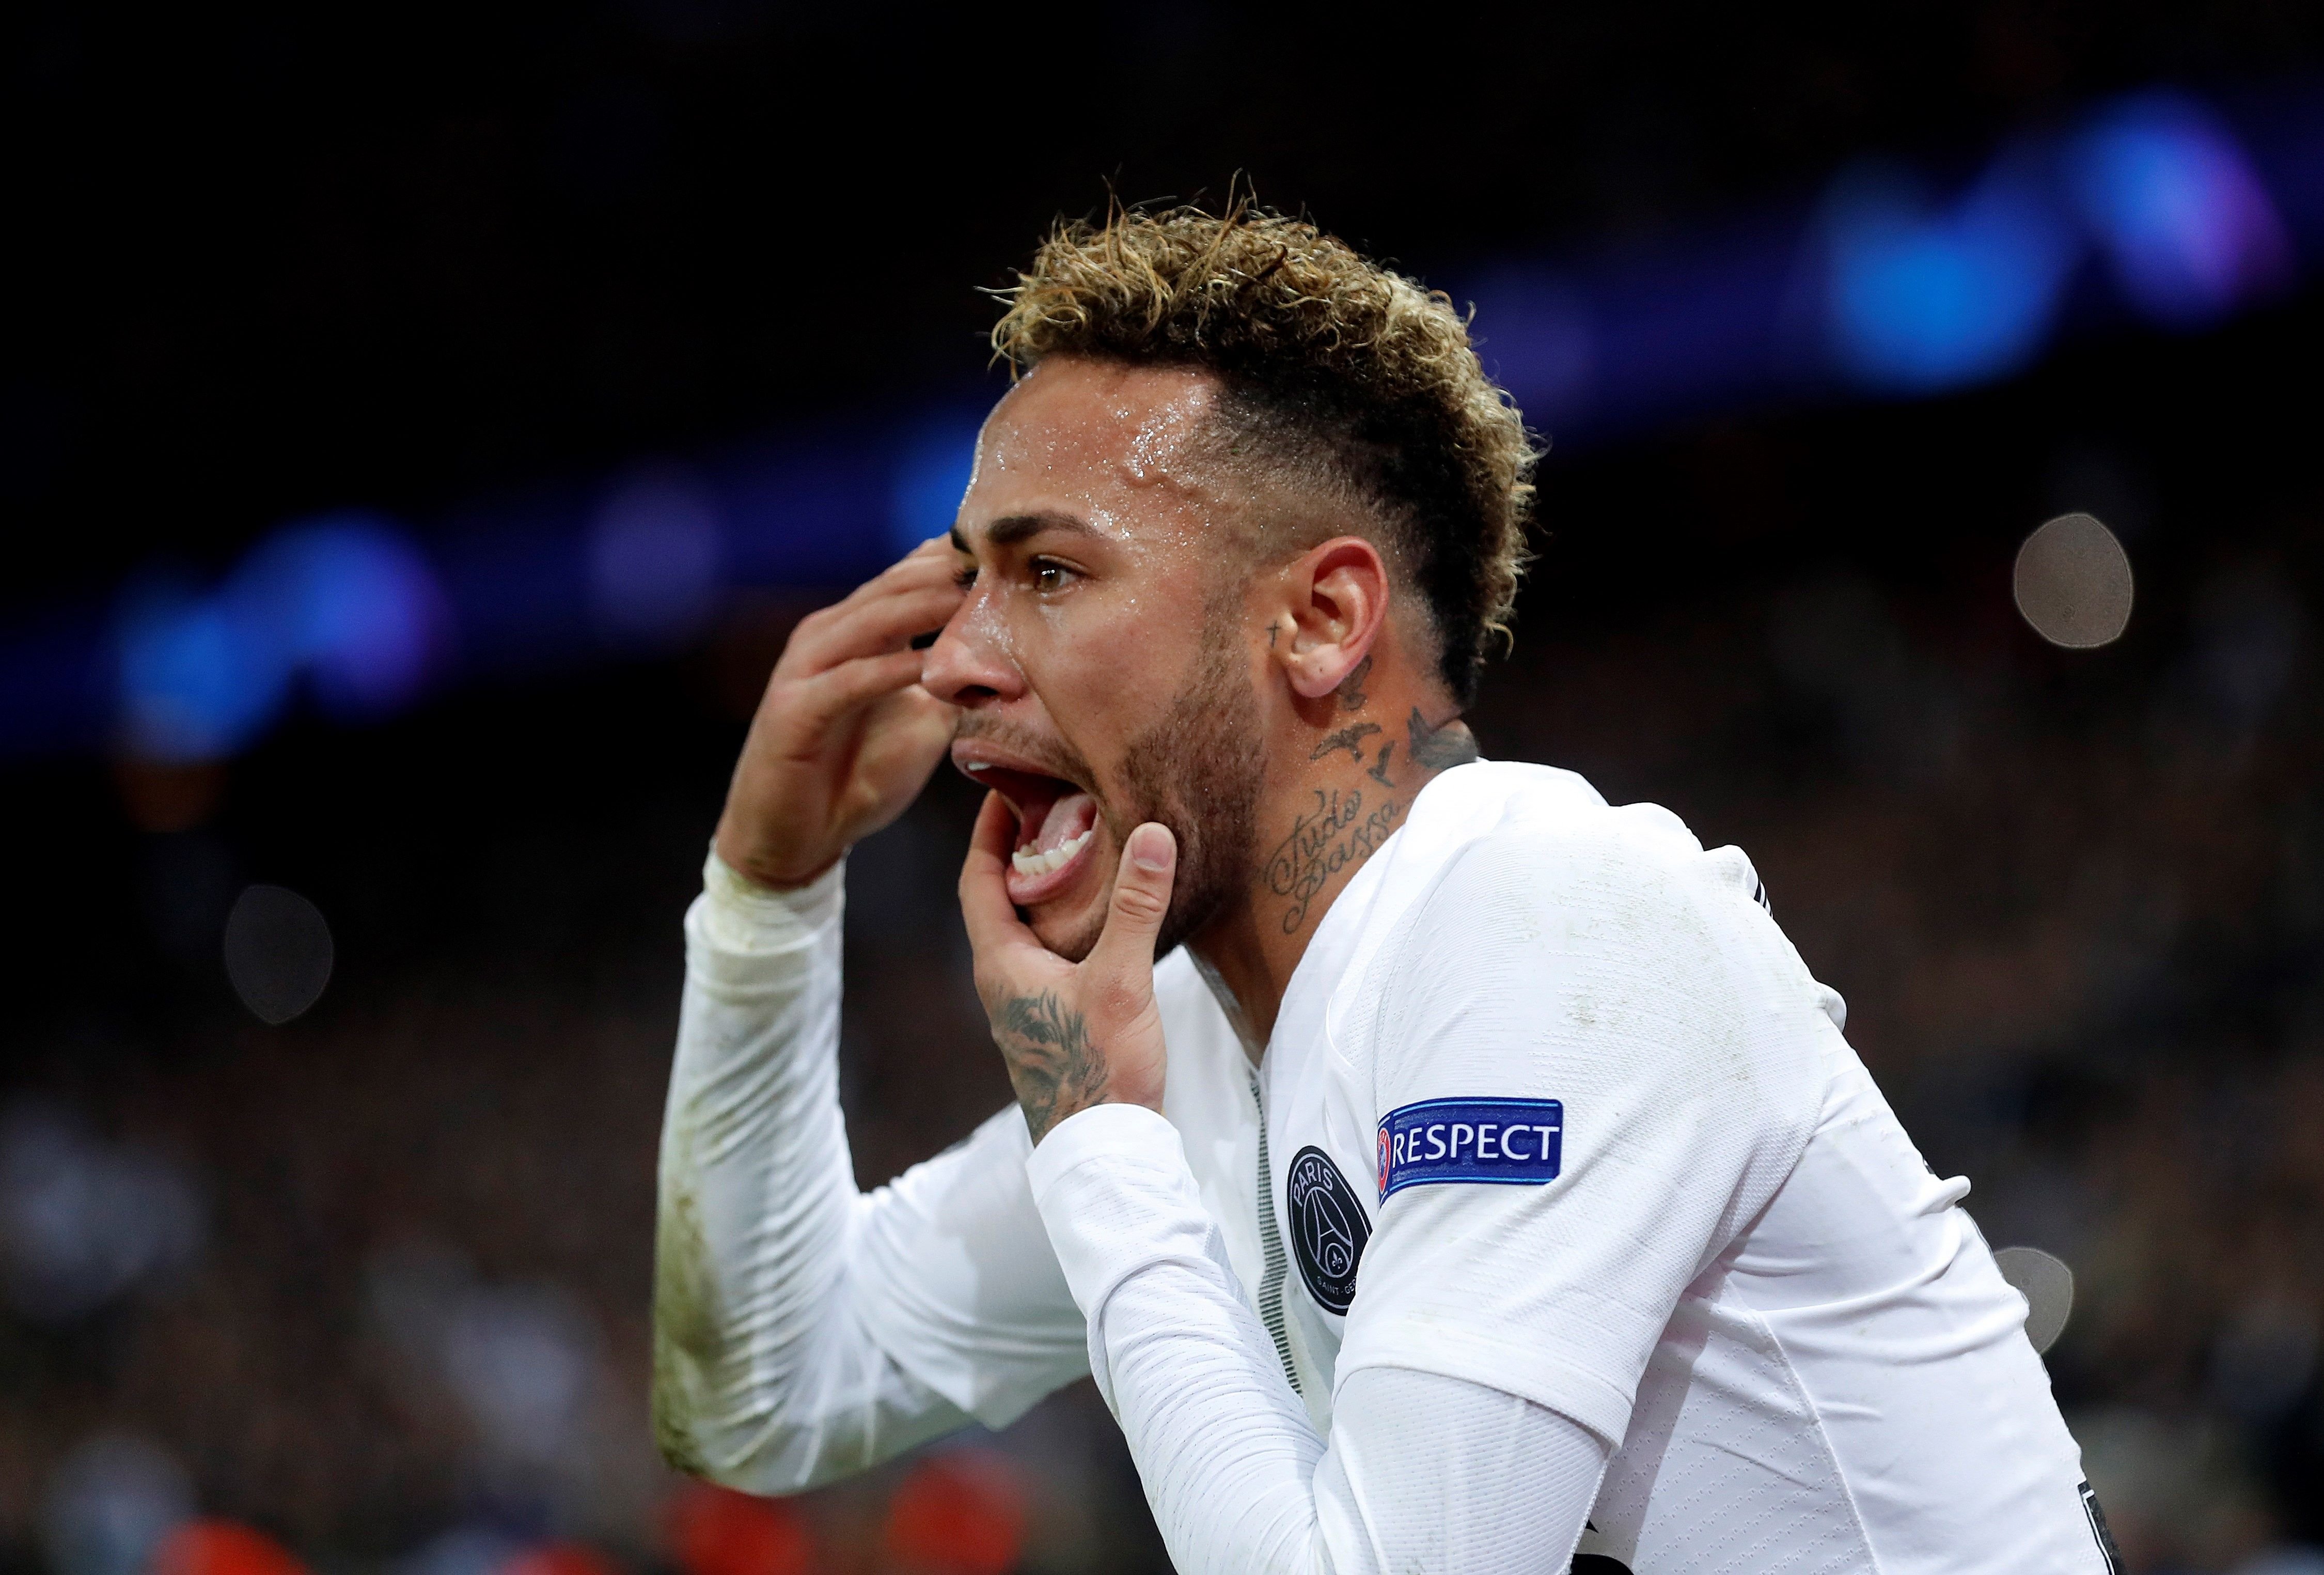 VÍDEO | L'afició del PSG insulta Neymar: "Fill de p..."